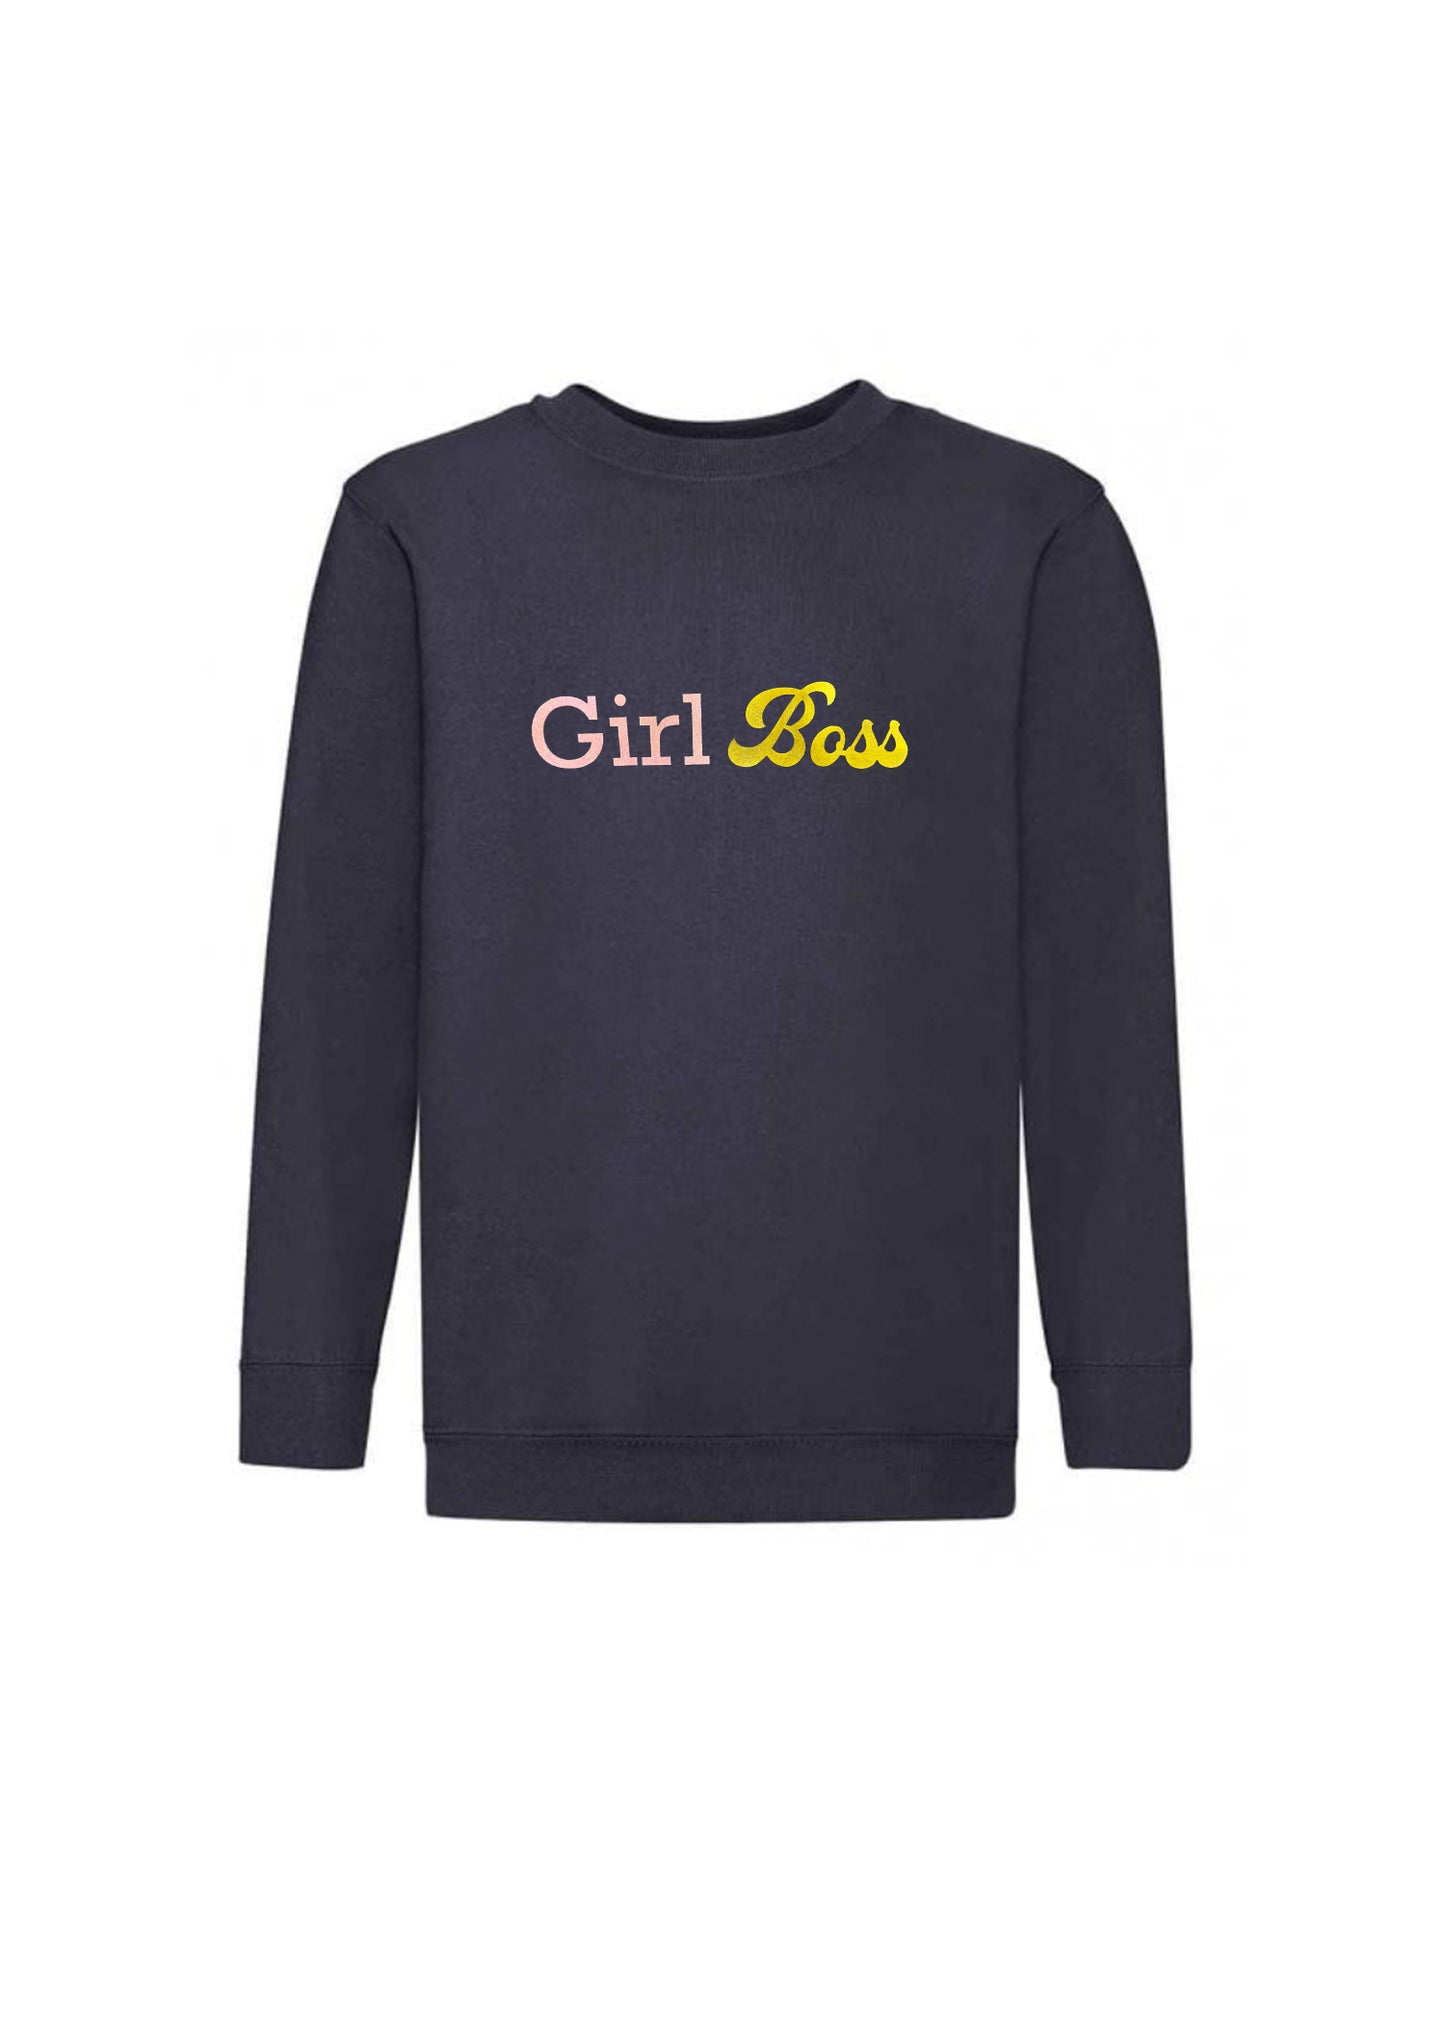 Adult Girl Boss Sweatshirt